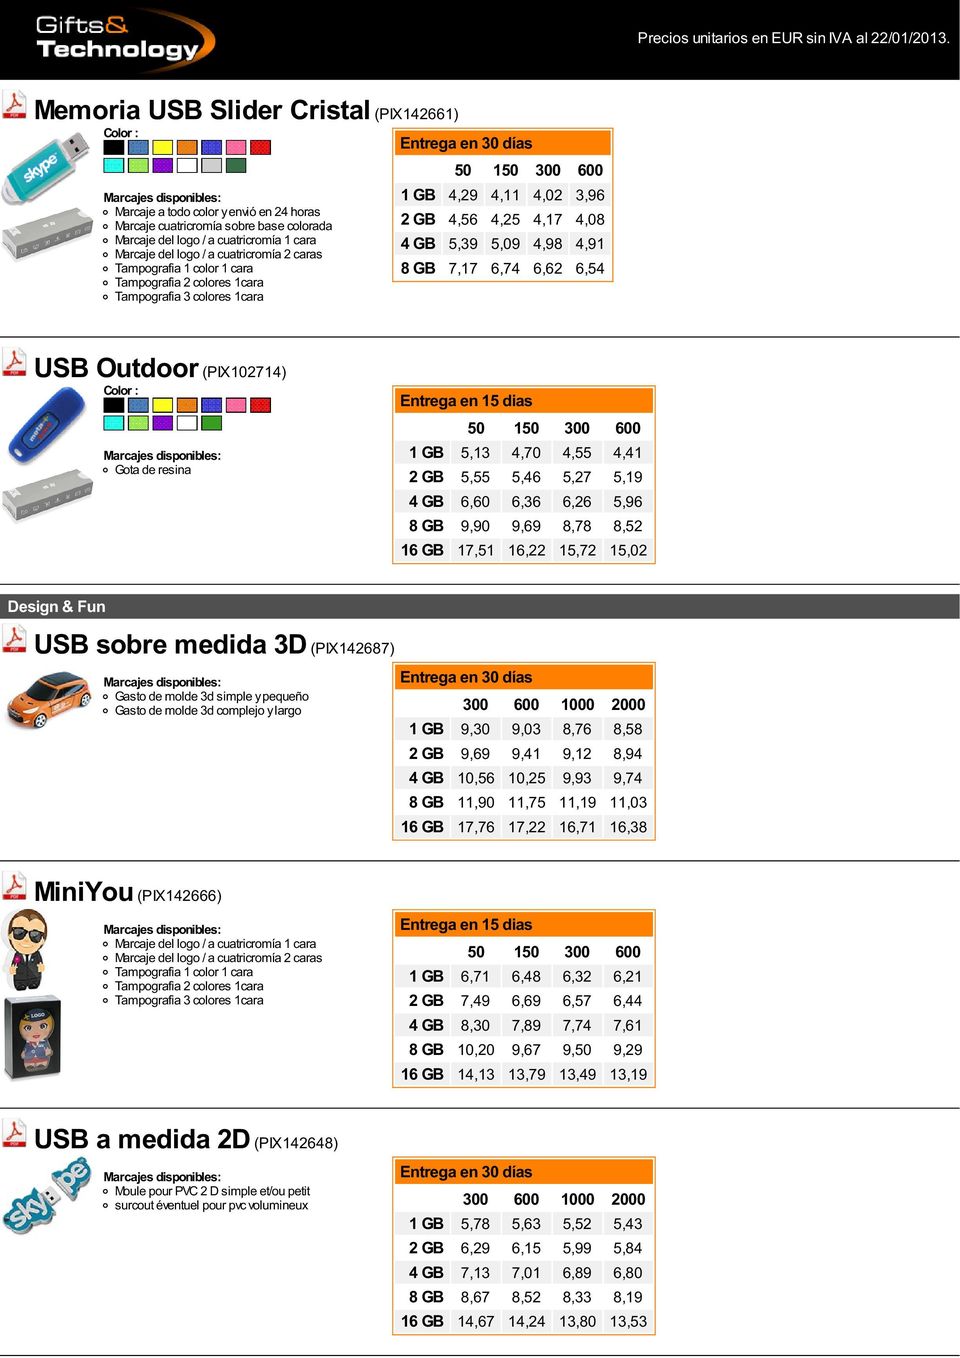 medida 3D (PIX42687) Gasto de molde 3d simple y pequeño Gasto de molde 3d complejo y largo 300 600 000 2000 GB 9,30 9,03 8,76 8,58 2 GB 9,69 9,4 9,2 8,94 4 GB 0,56 0,25 9,93 9,74 8 GB,90,75,9,03 6 GB